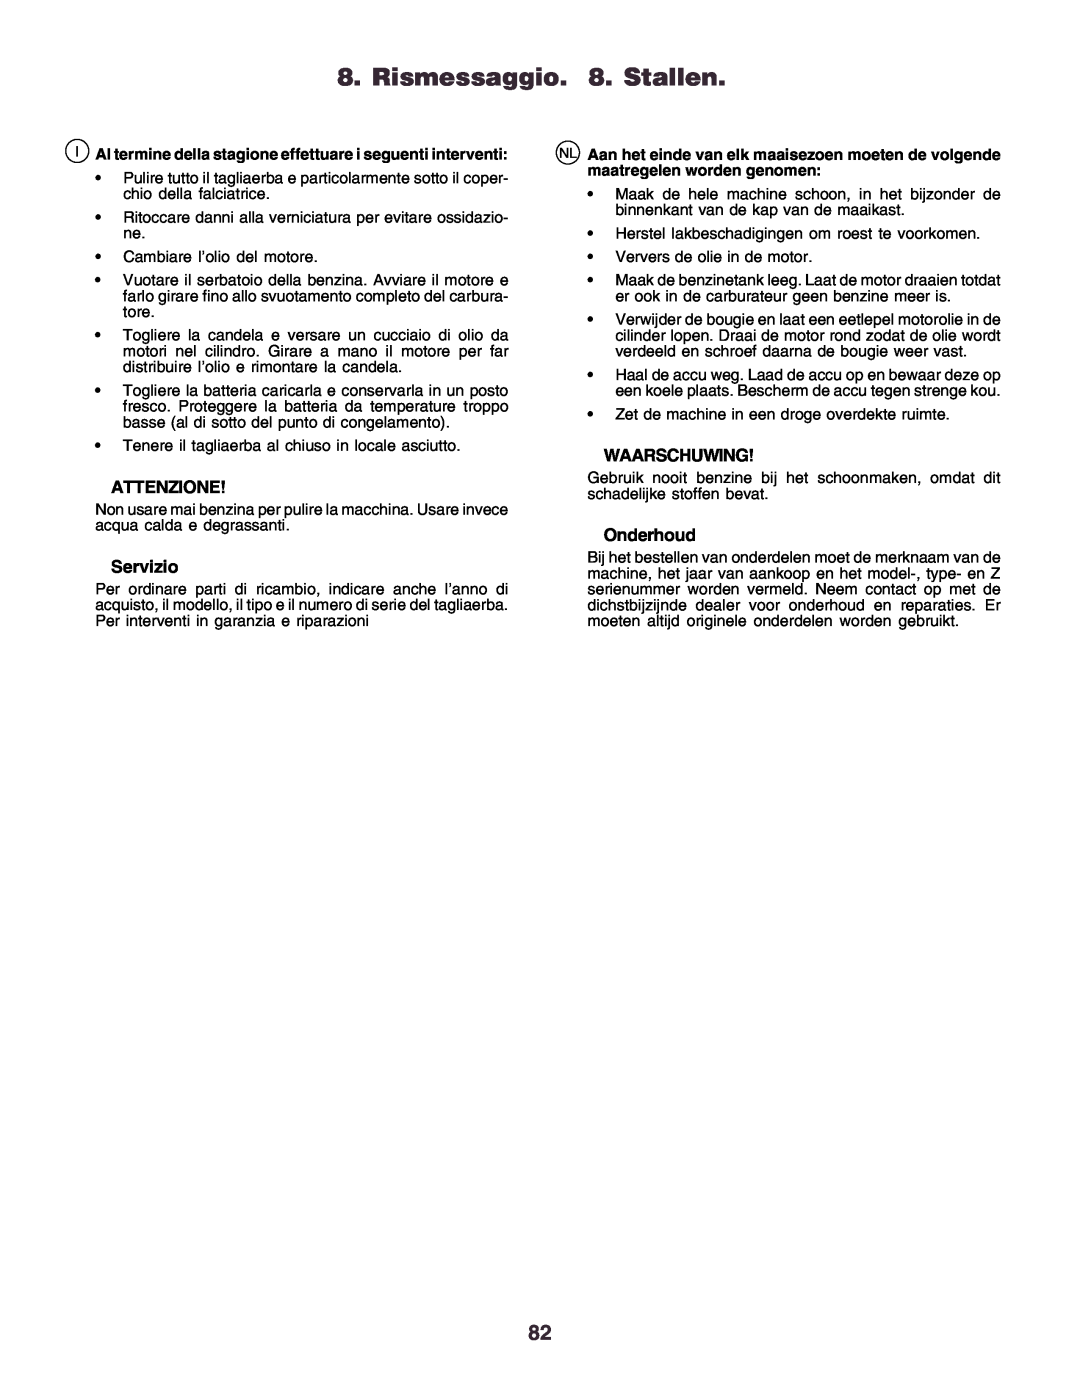 Husqvarna CT130 instruction manual Rismessaggio. 8. Stallen, Attenzione, Servizio, Waarschuwing, Onderhoud 